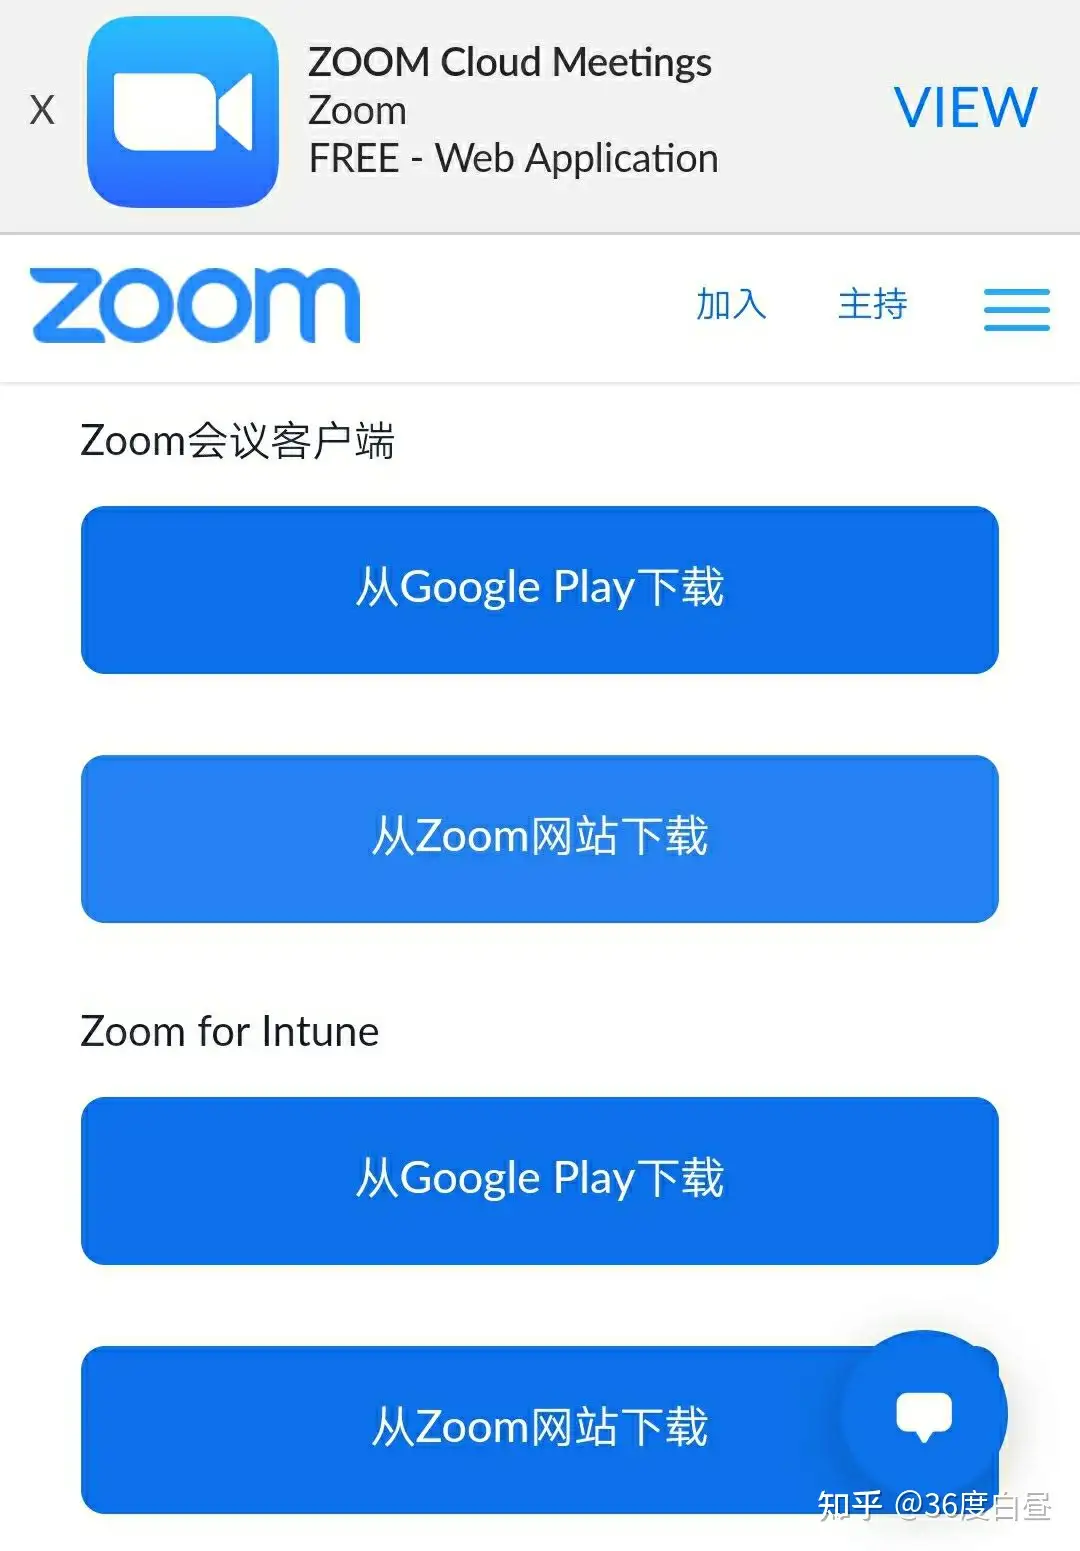 安卓手机如何下载ZOOM？ - 知乎